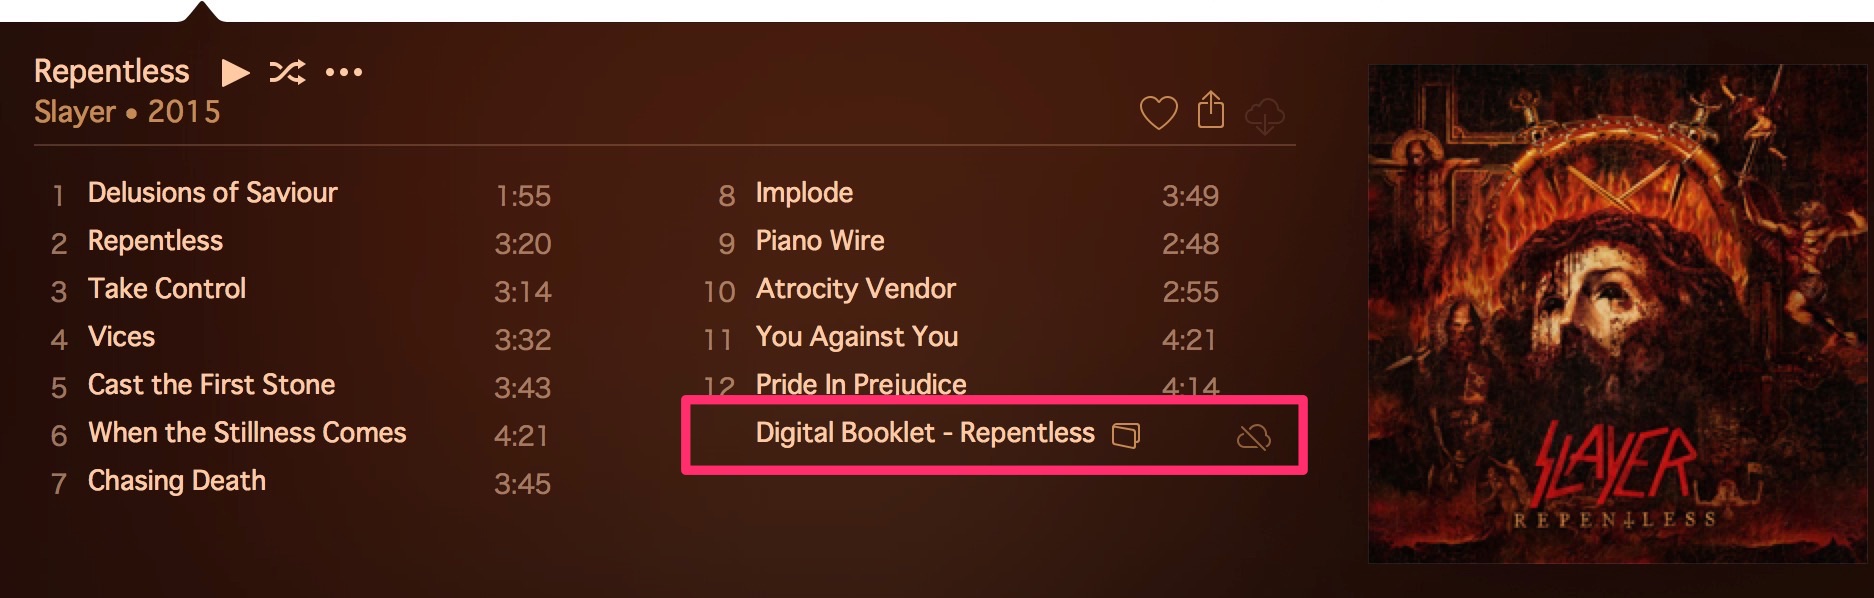 iTunesに表示されたデジタルブックレット